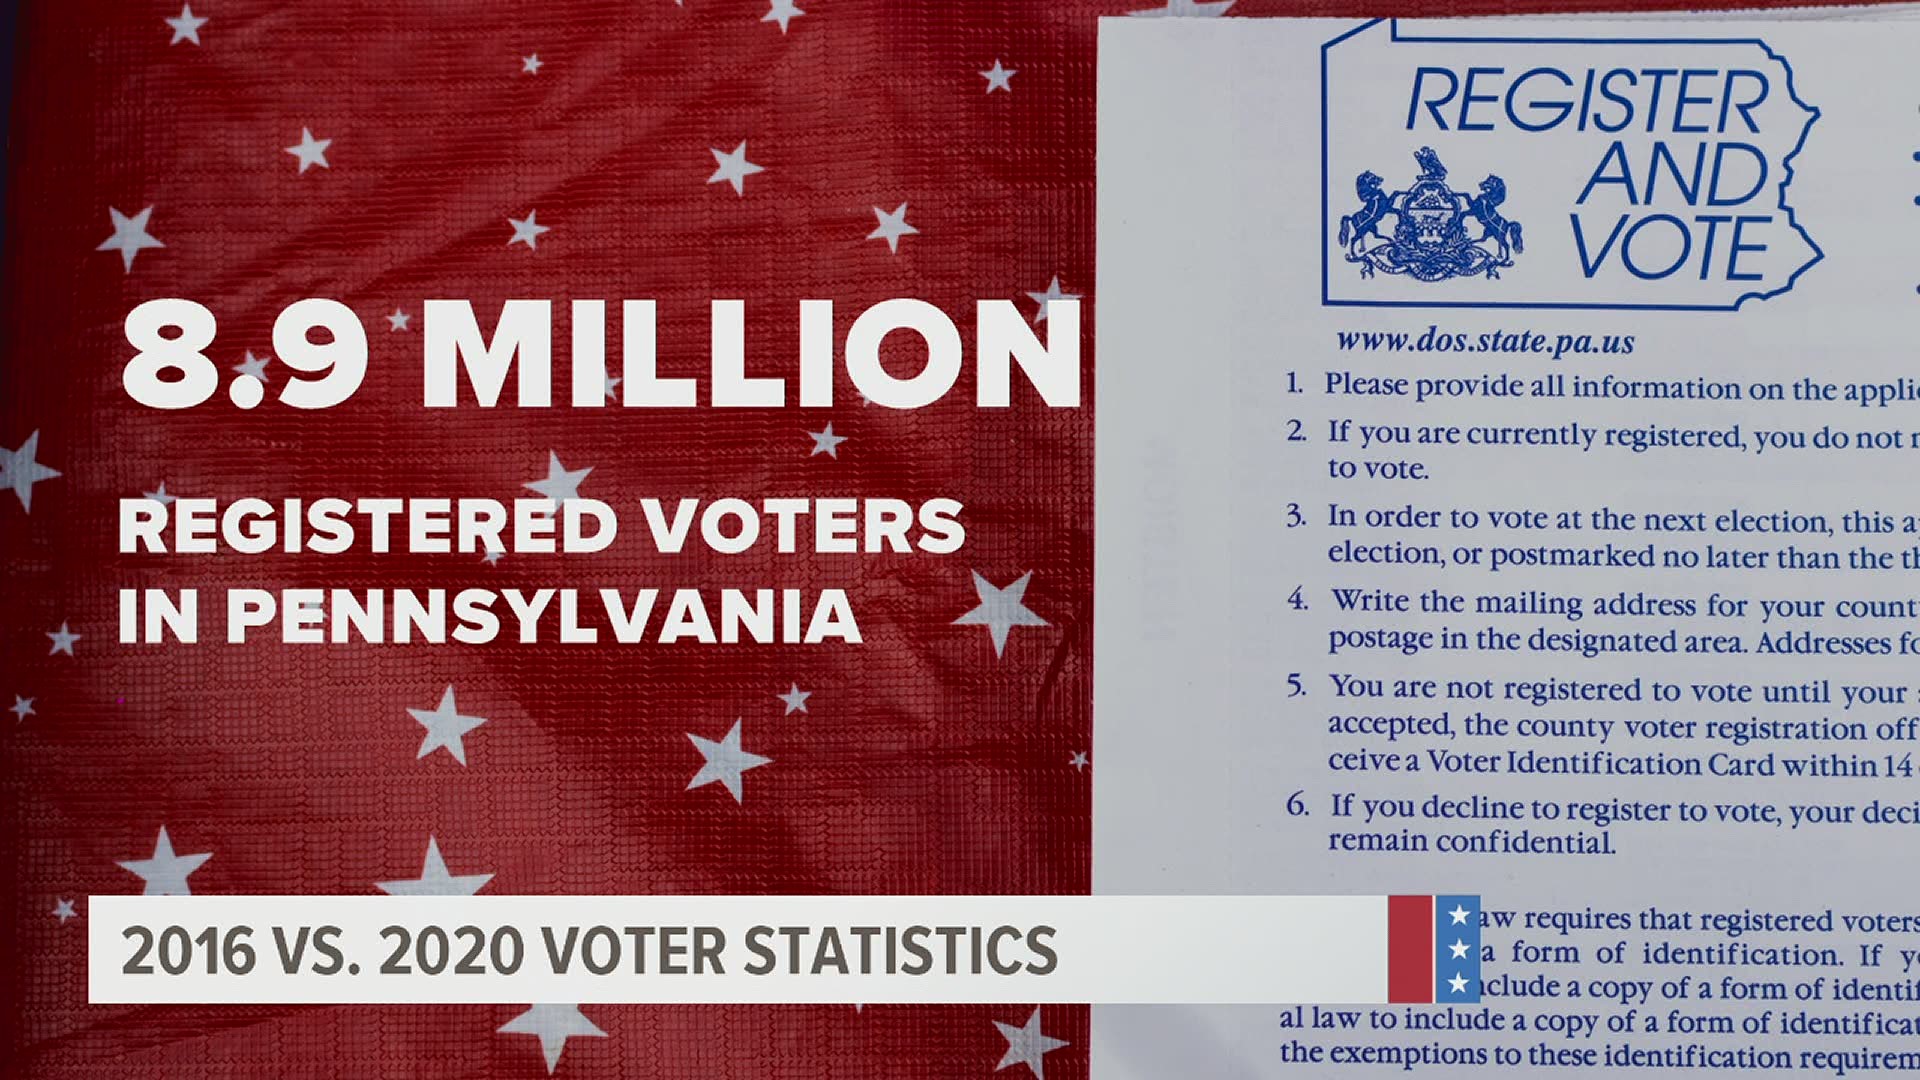 2016 vs. 2020 voter statistics